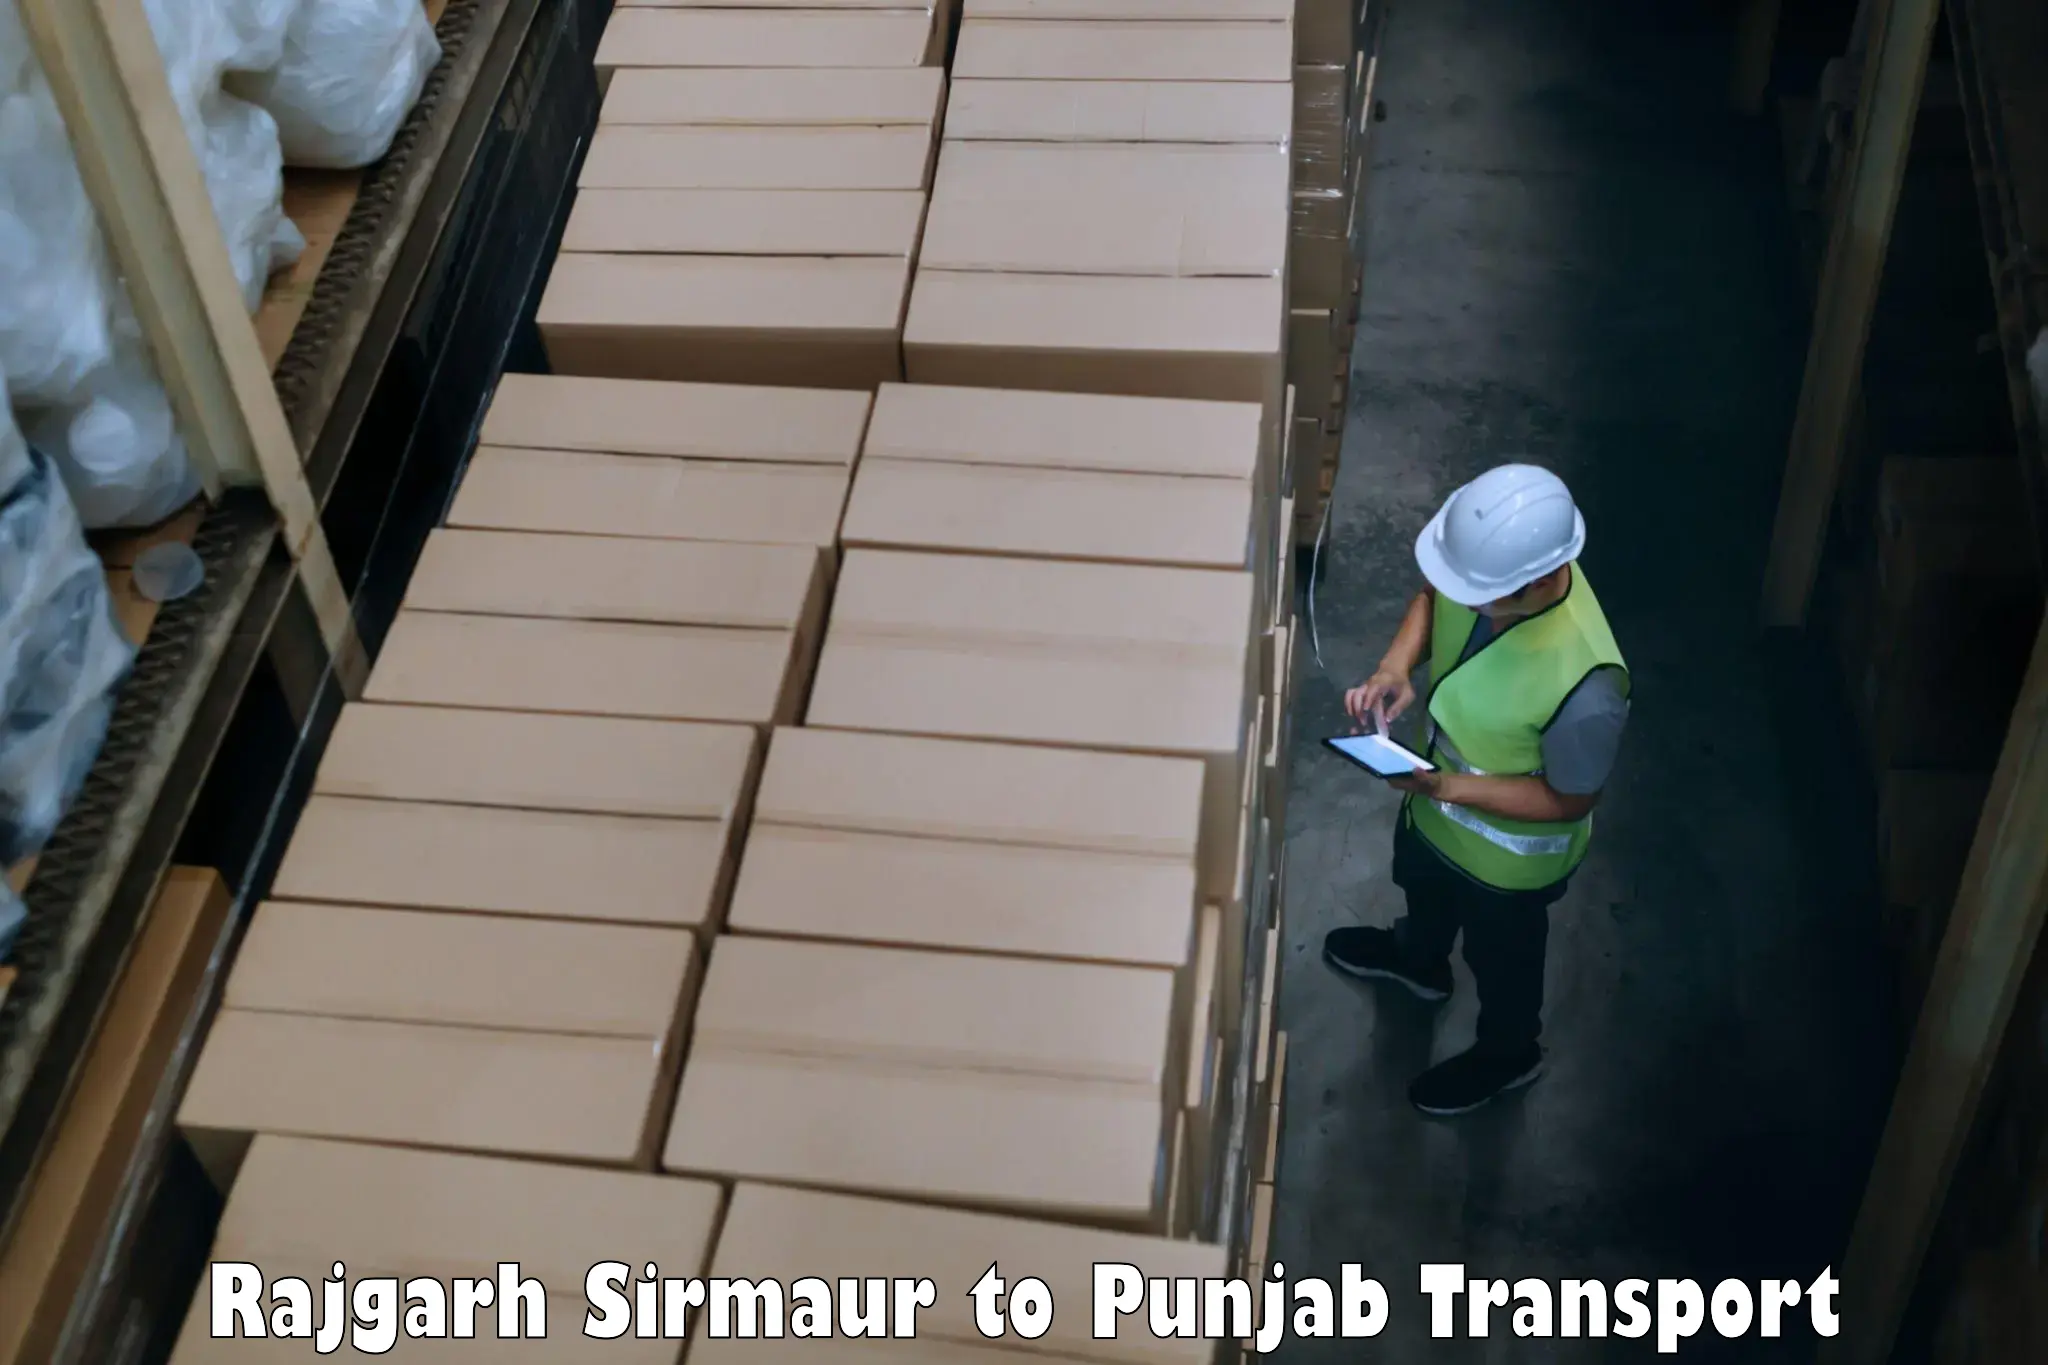 Road transport services Rajgarh Sirmaur to Punjab